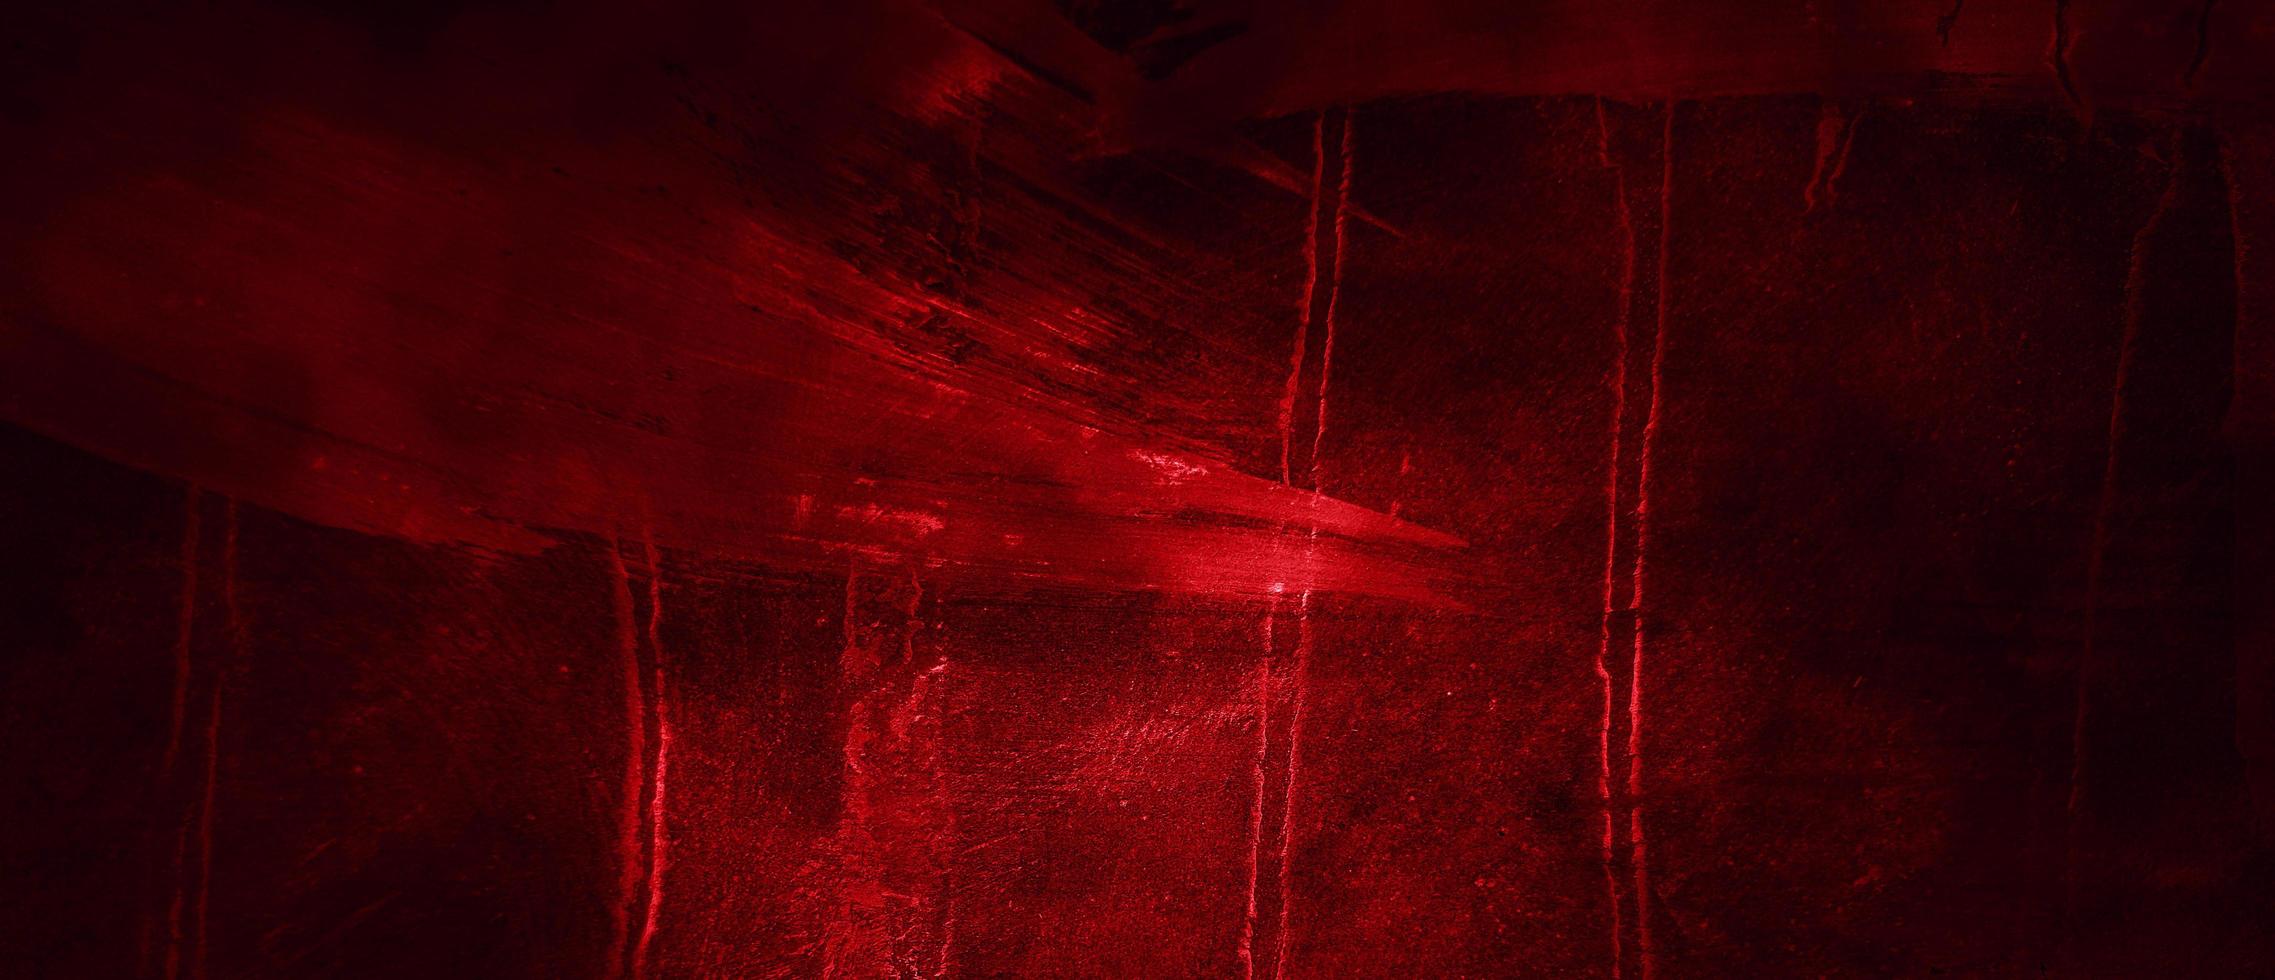 fundo de terror vermelho e preto assustador. concreto grunge vermelho escuro foto